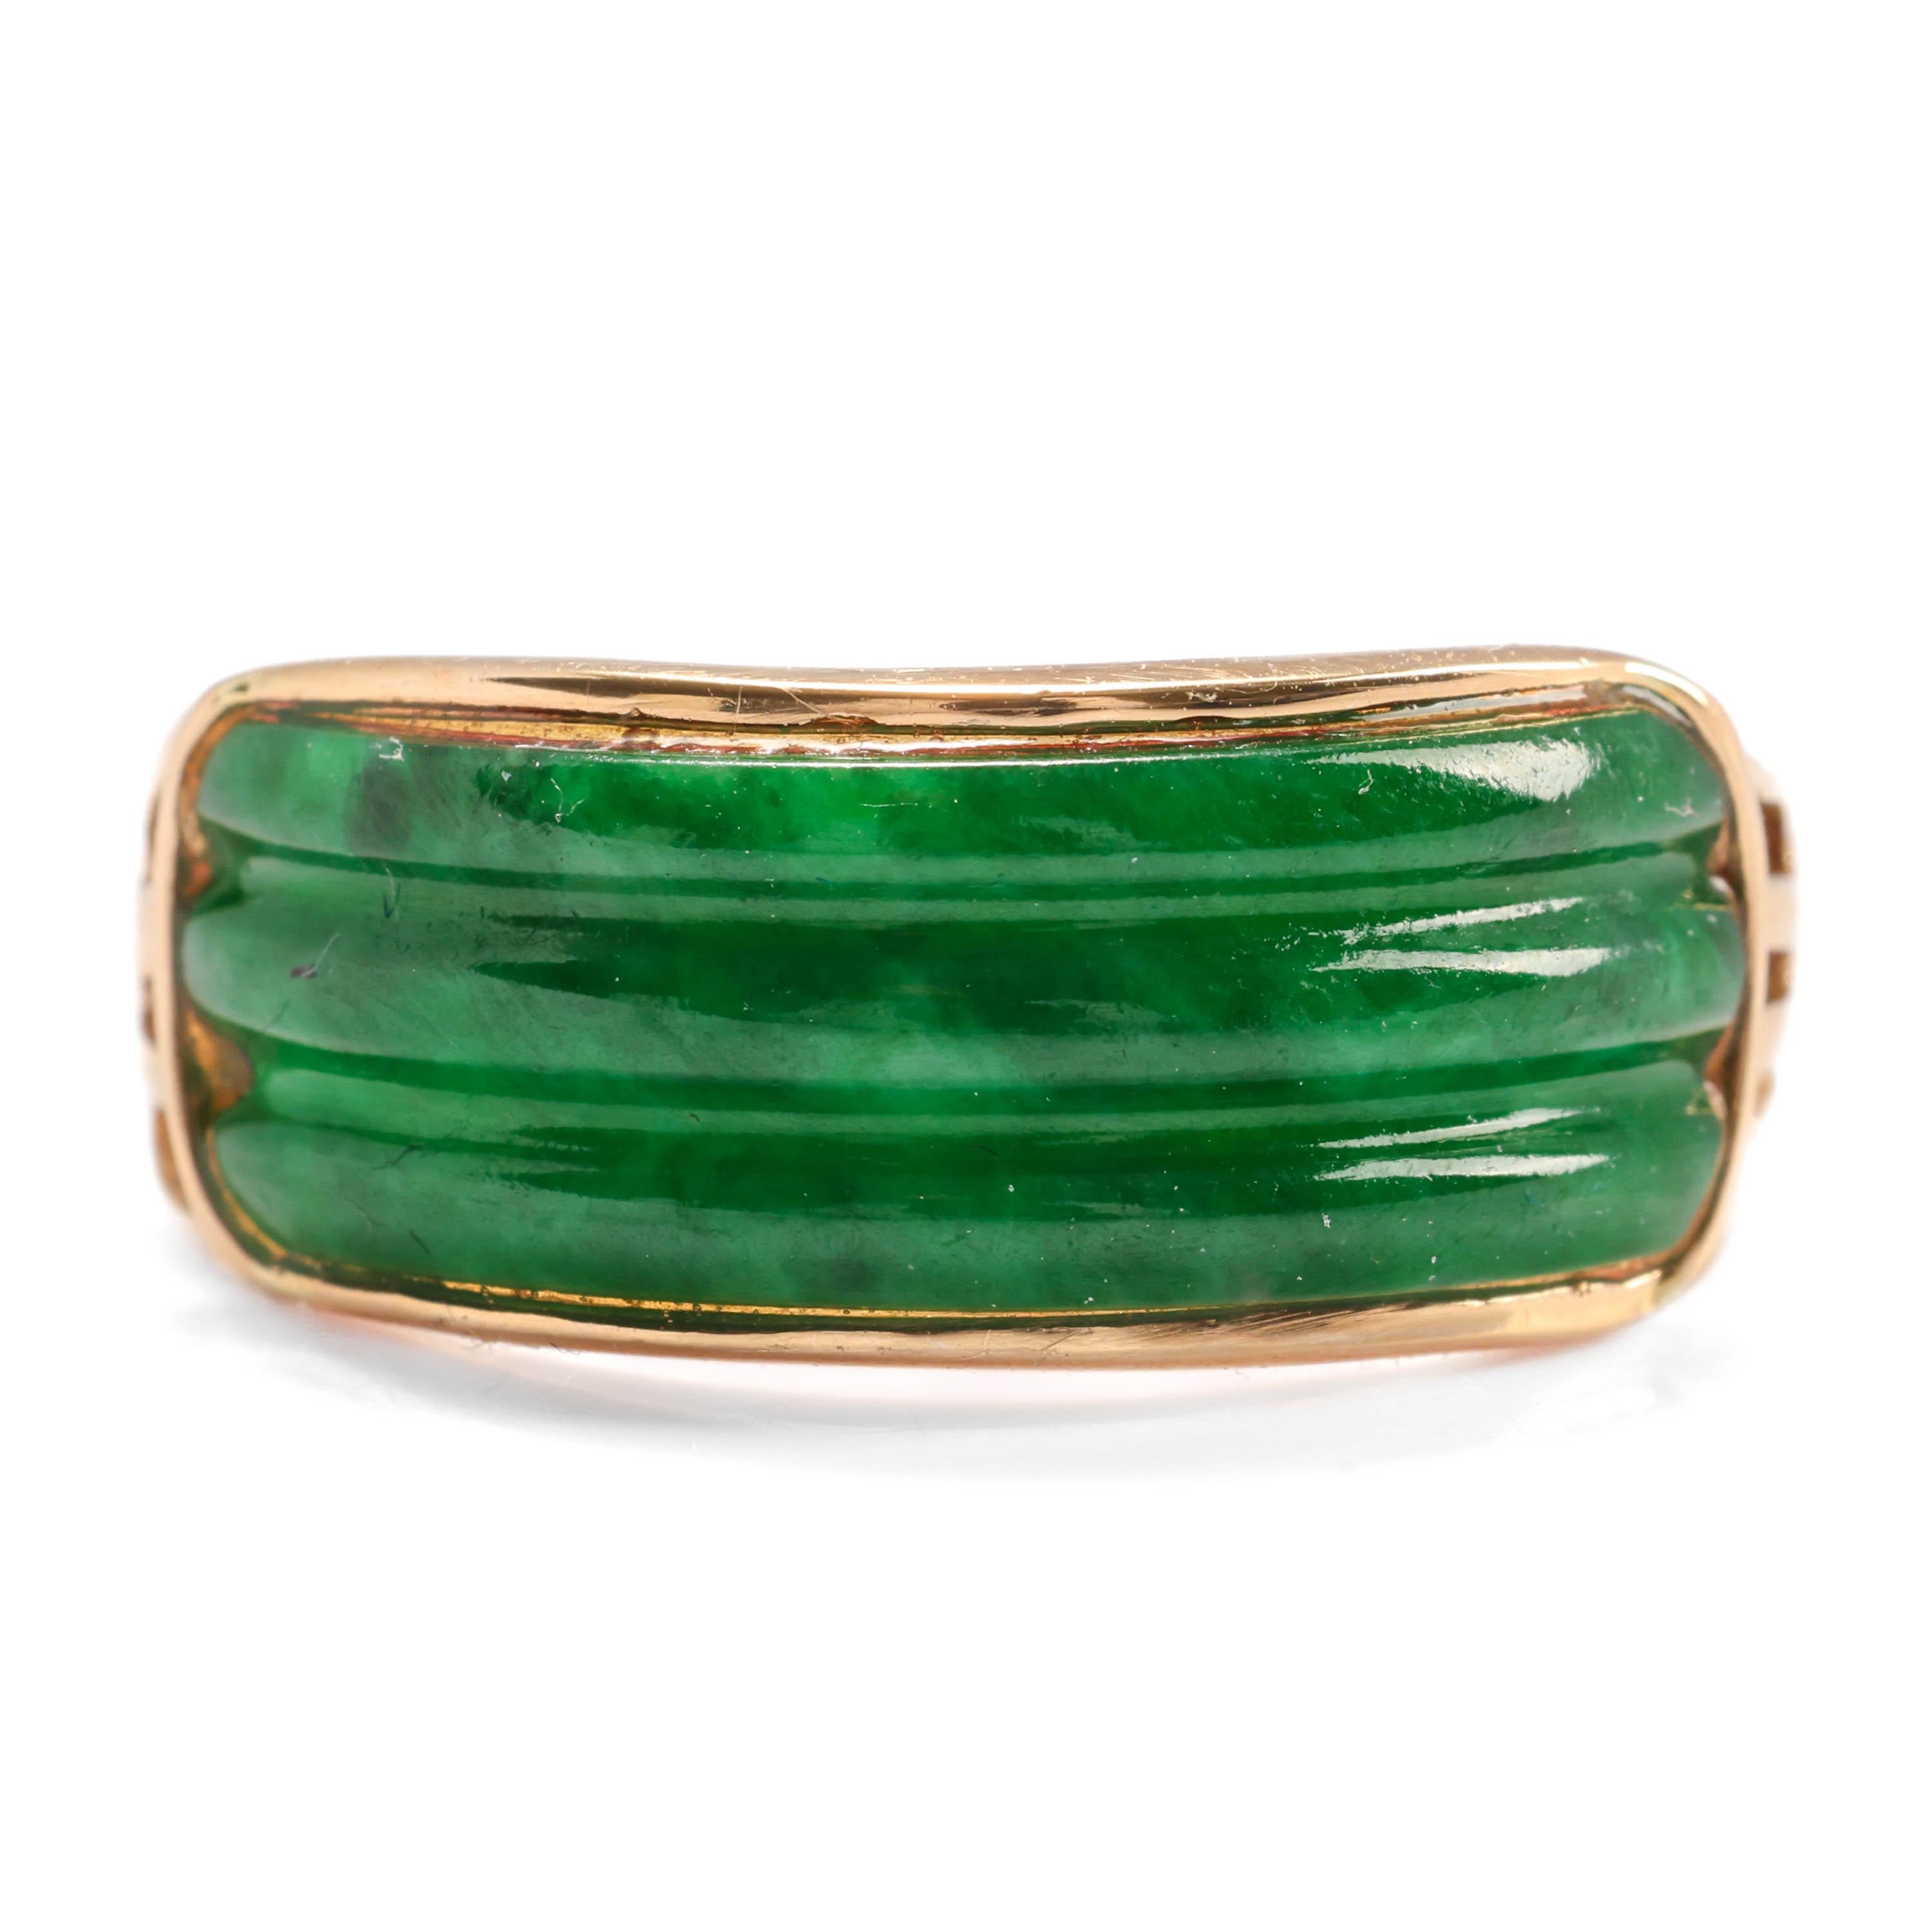 Dieser ungewöhnliche Ring aus der Mitte des vorigen Jahrhunderts (ca. 1960er Jahre) aus 14 Karat Gelbgold enthält einen handgeschnitzten, geriffelten Cabochon aus üppiger, durchscheinender, tief smaragdgrüner Jade aus Birma.

Die Jade misst 19,08 mm